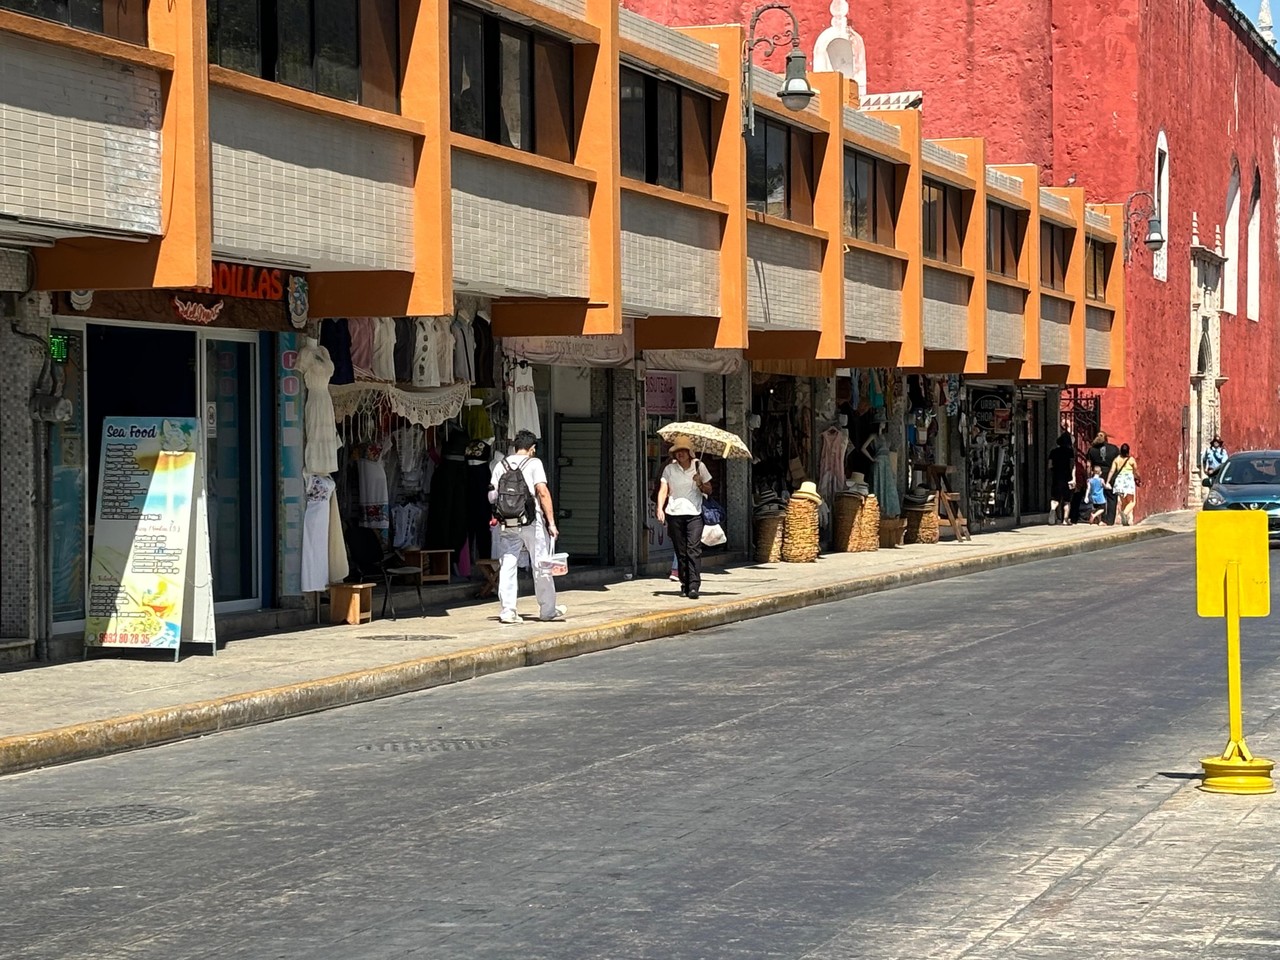 El estado de Yucatán a estado experimentado elevadas temperaturas y olas de calor constantemente Fotos: Alejandra Vargas